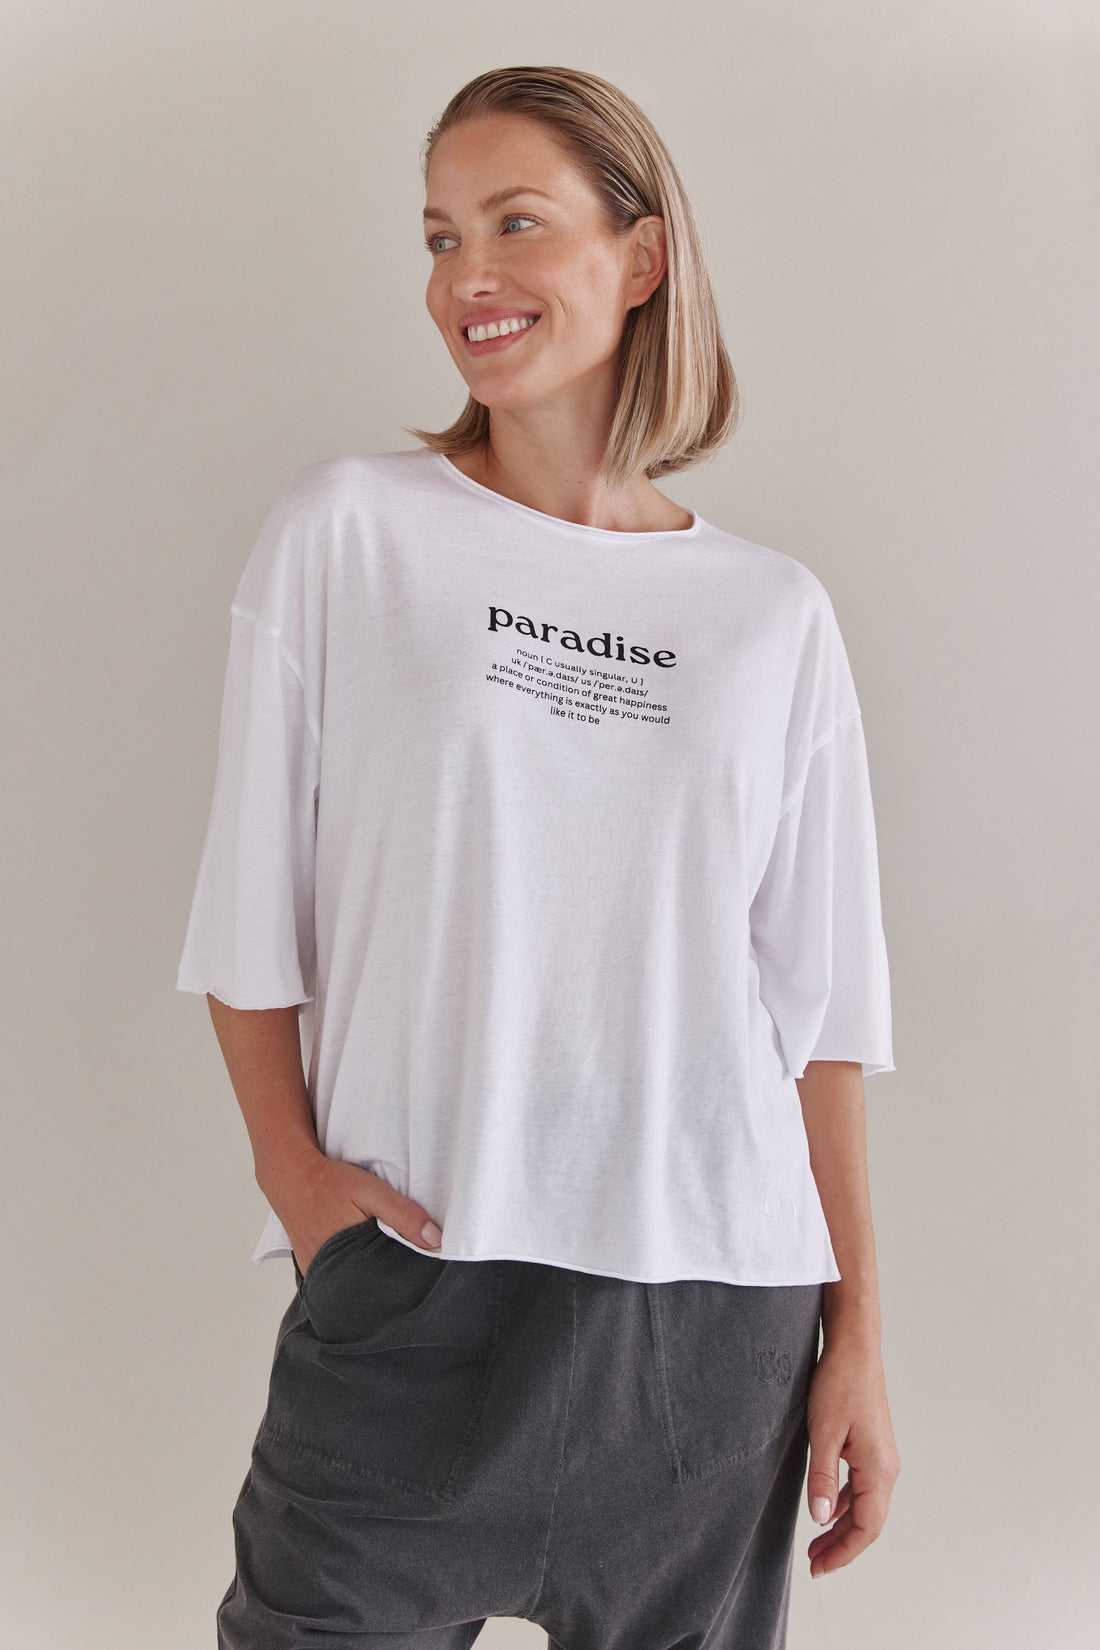 Softes Loose Fit T-Shirt Mit 3/4 Ärmeln Und Paradise Druck